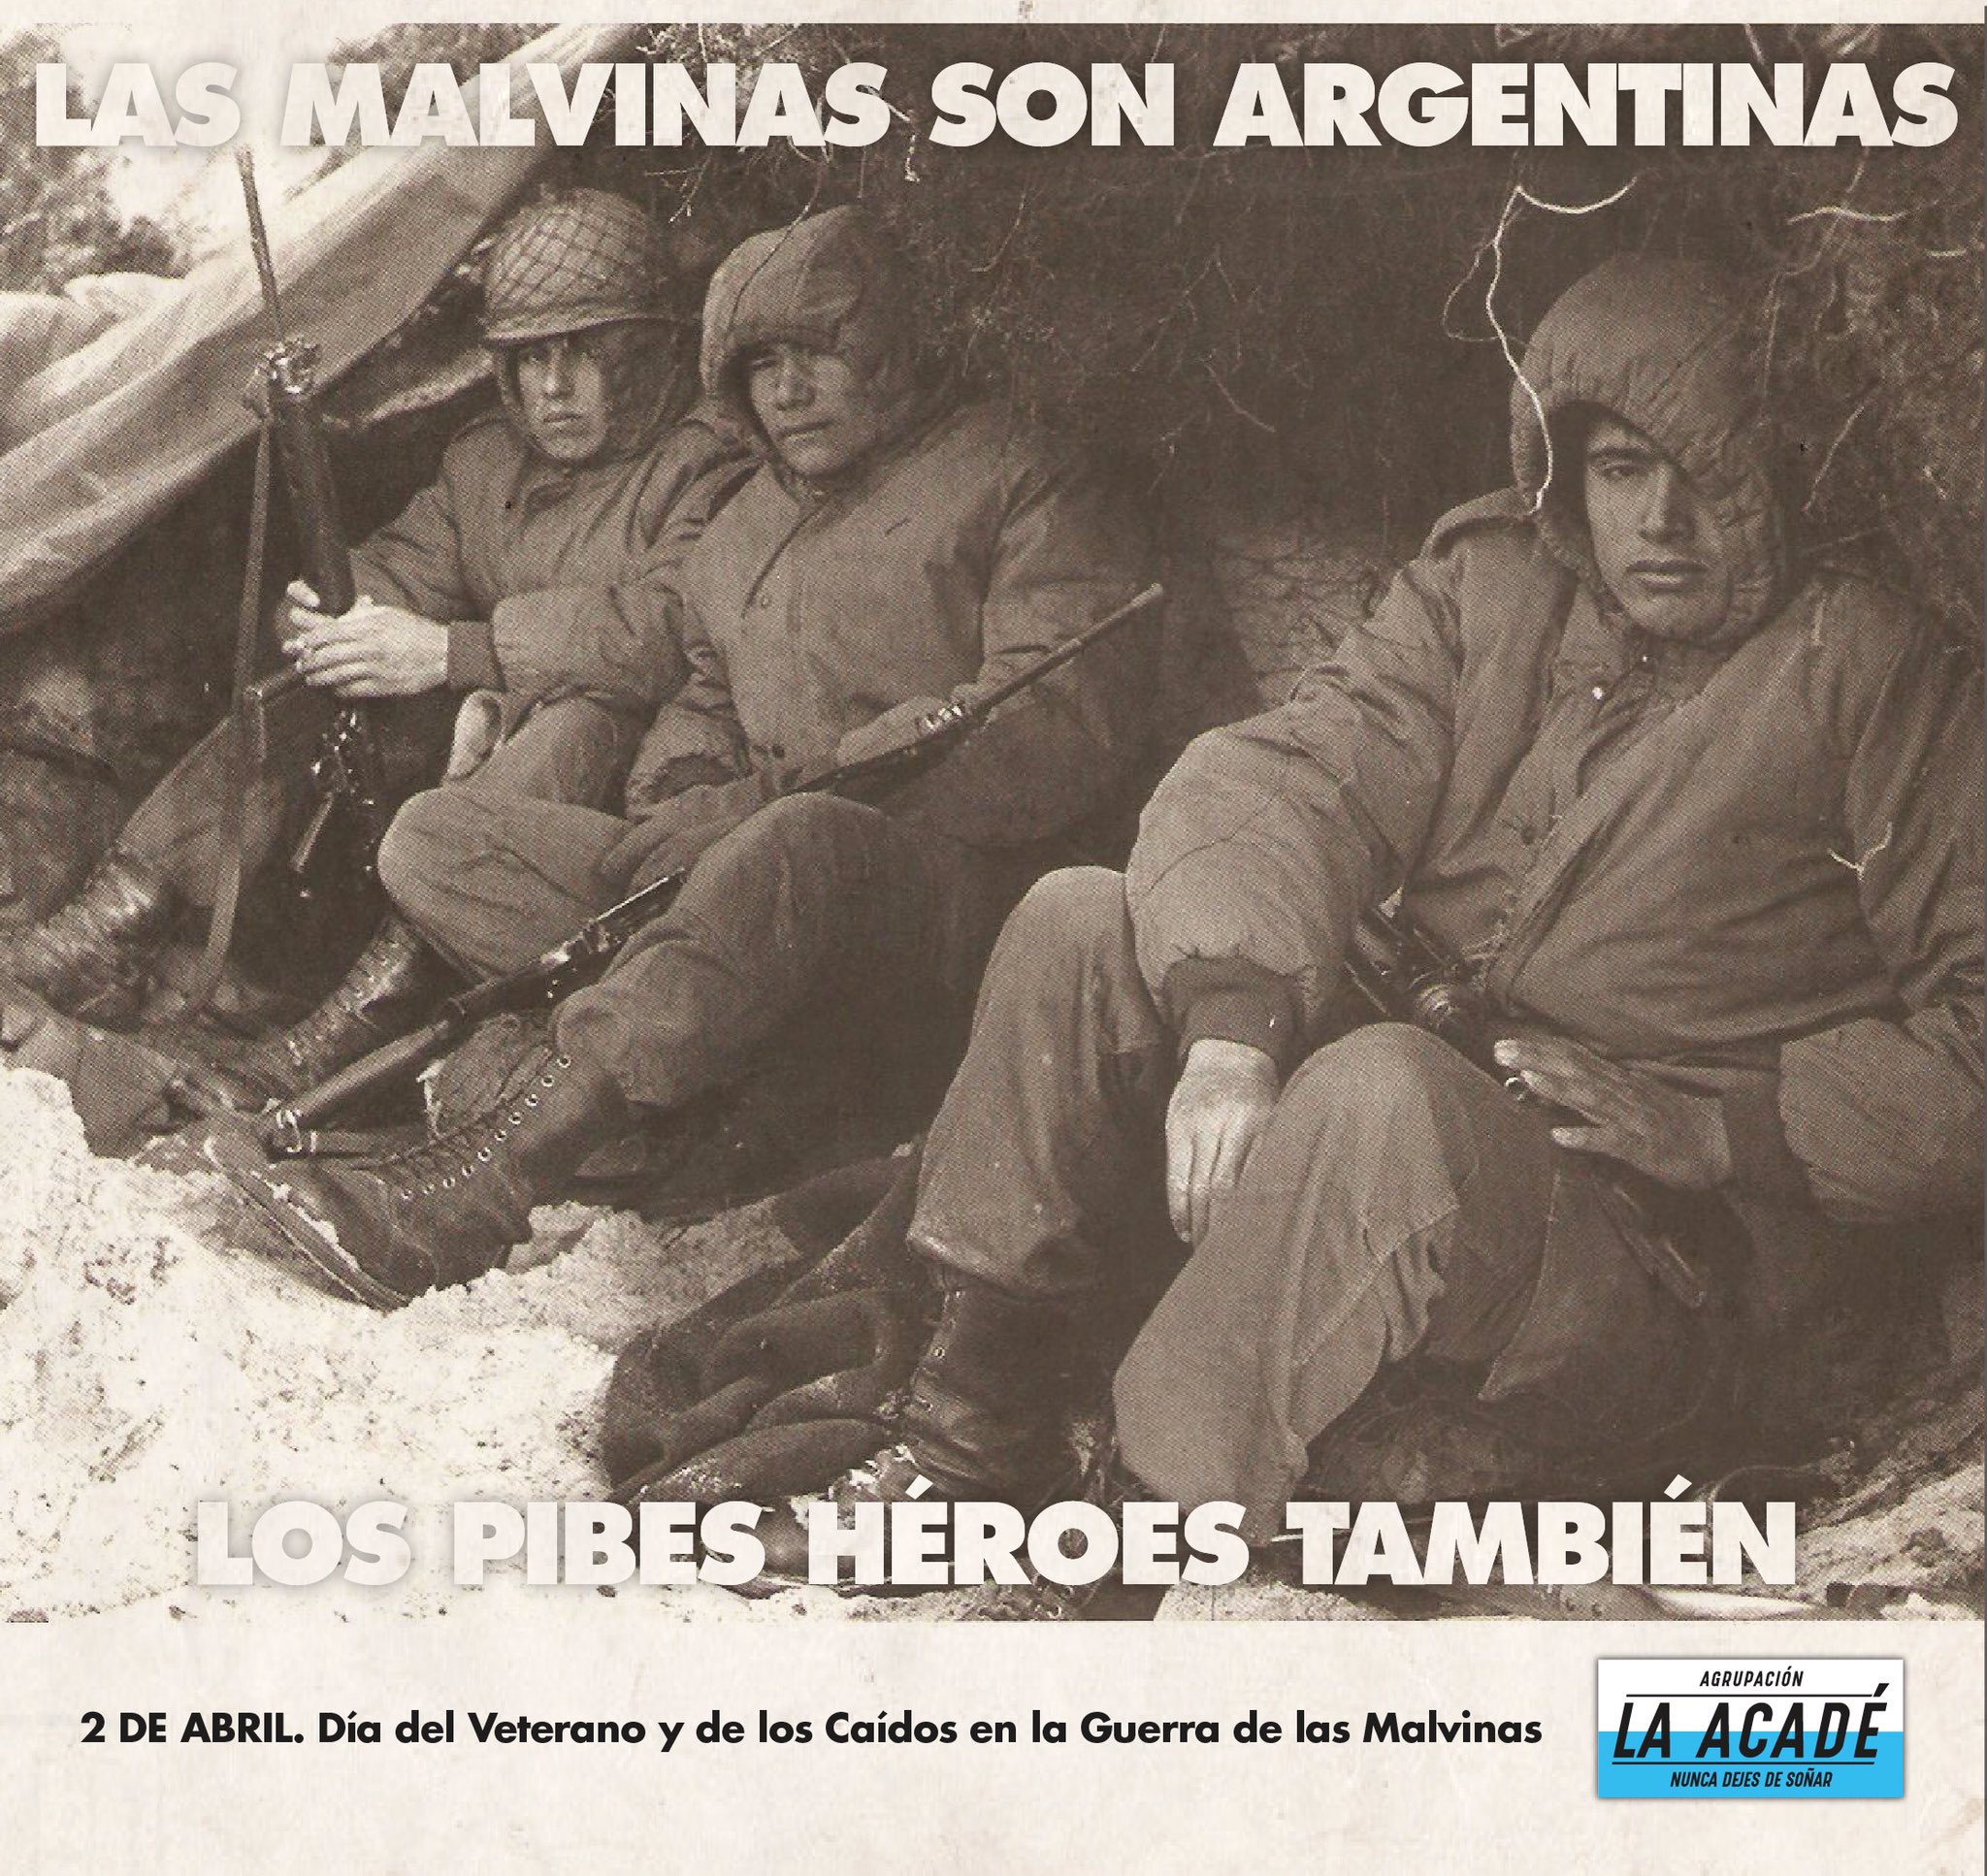 Agrupación La Acadé on X: Las Malvinas son Argentinas. Los pibes